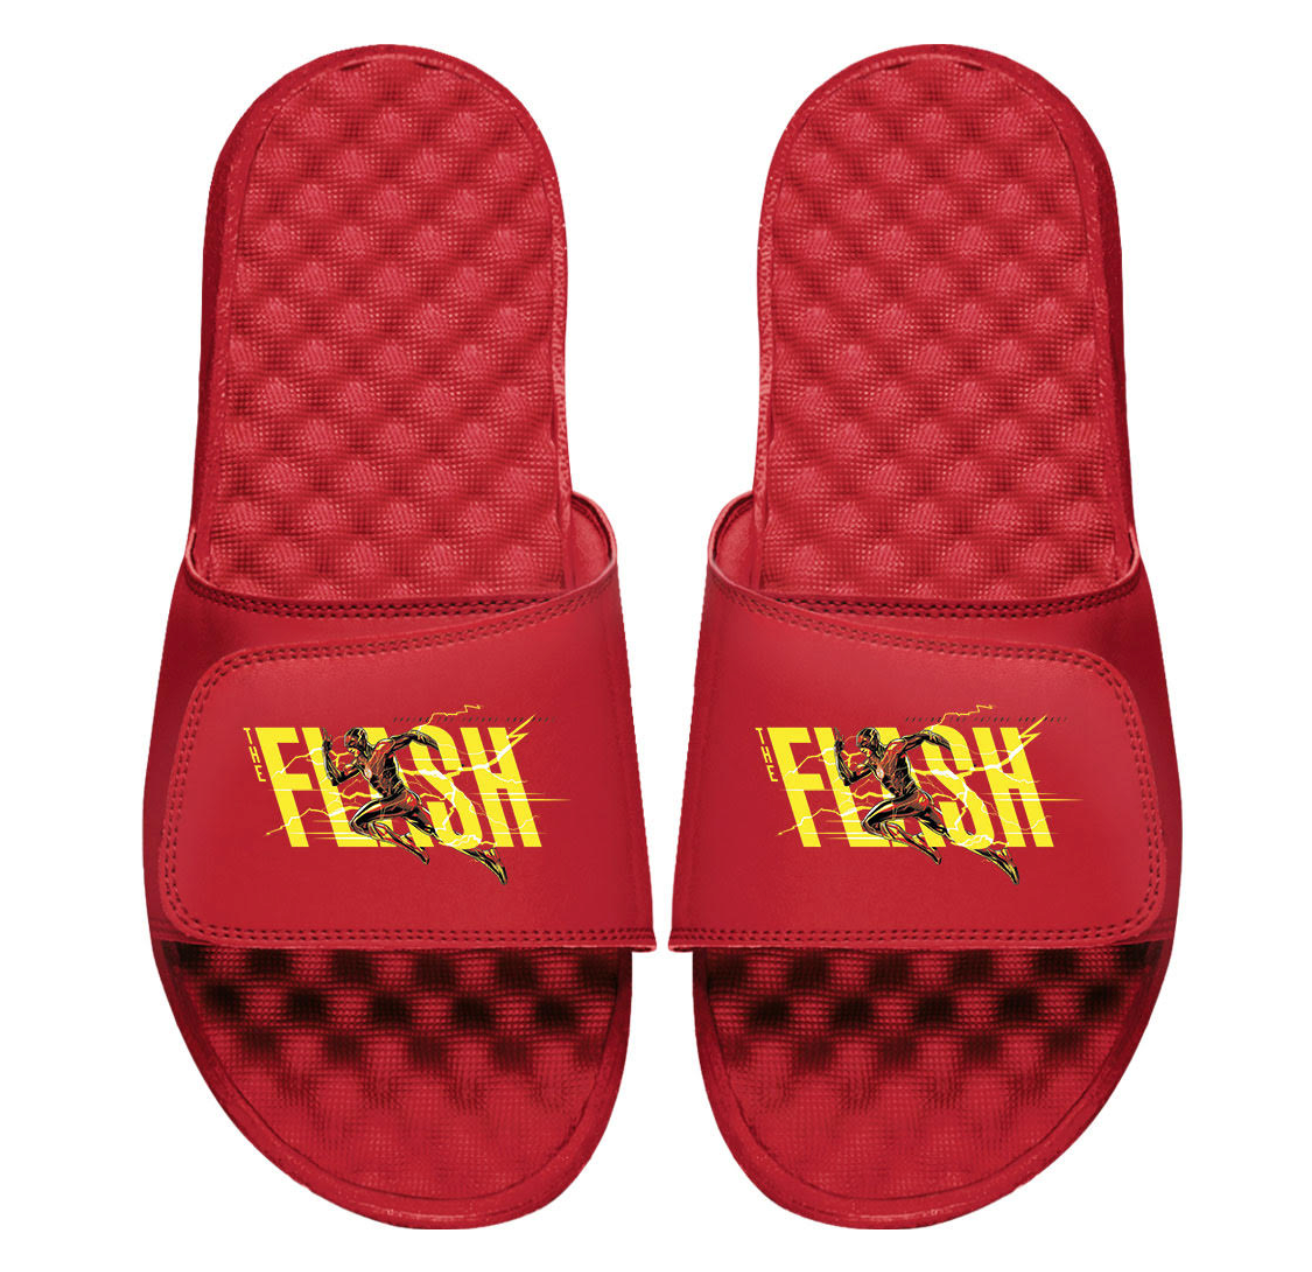 The Flash: Fastest Man Alive Slides